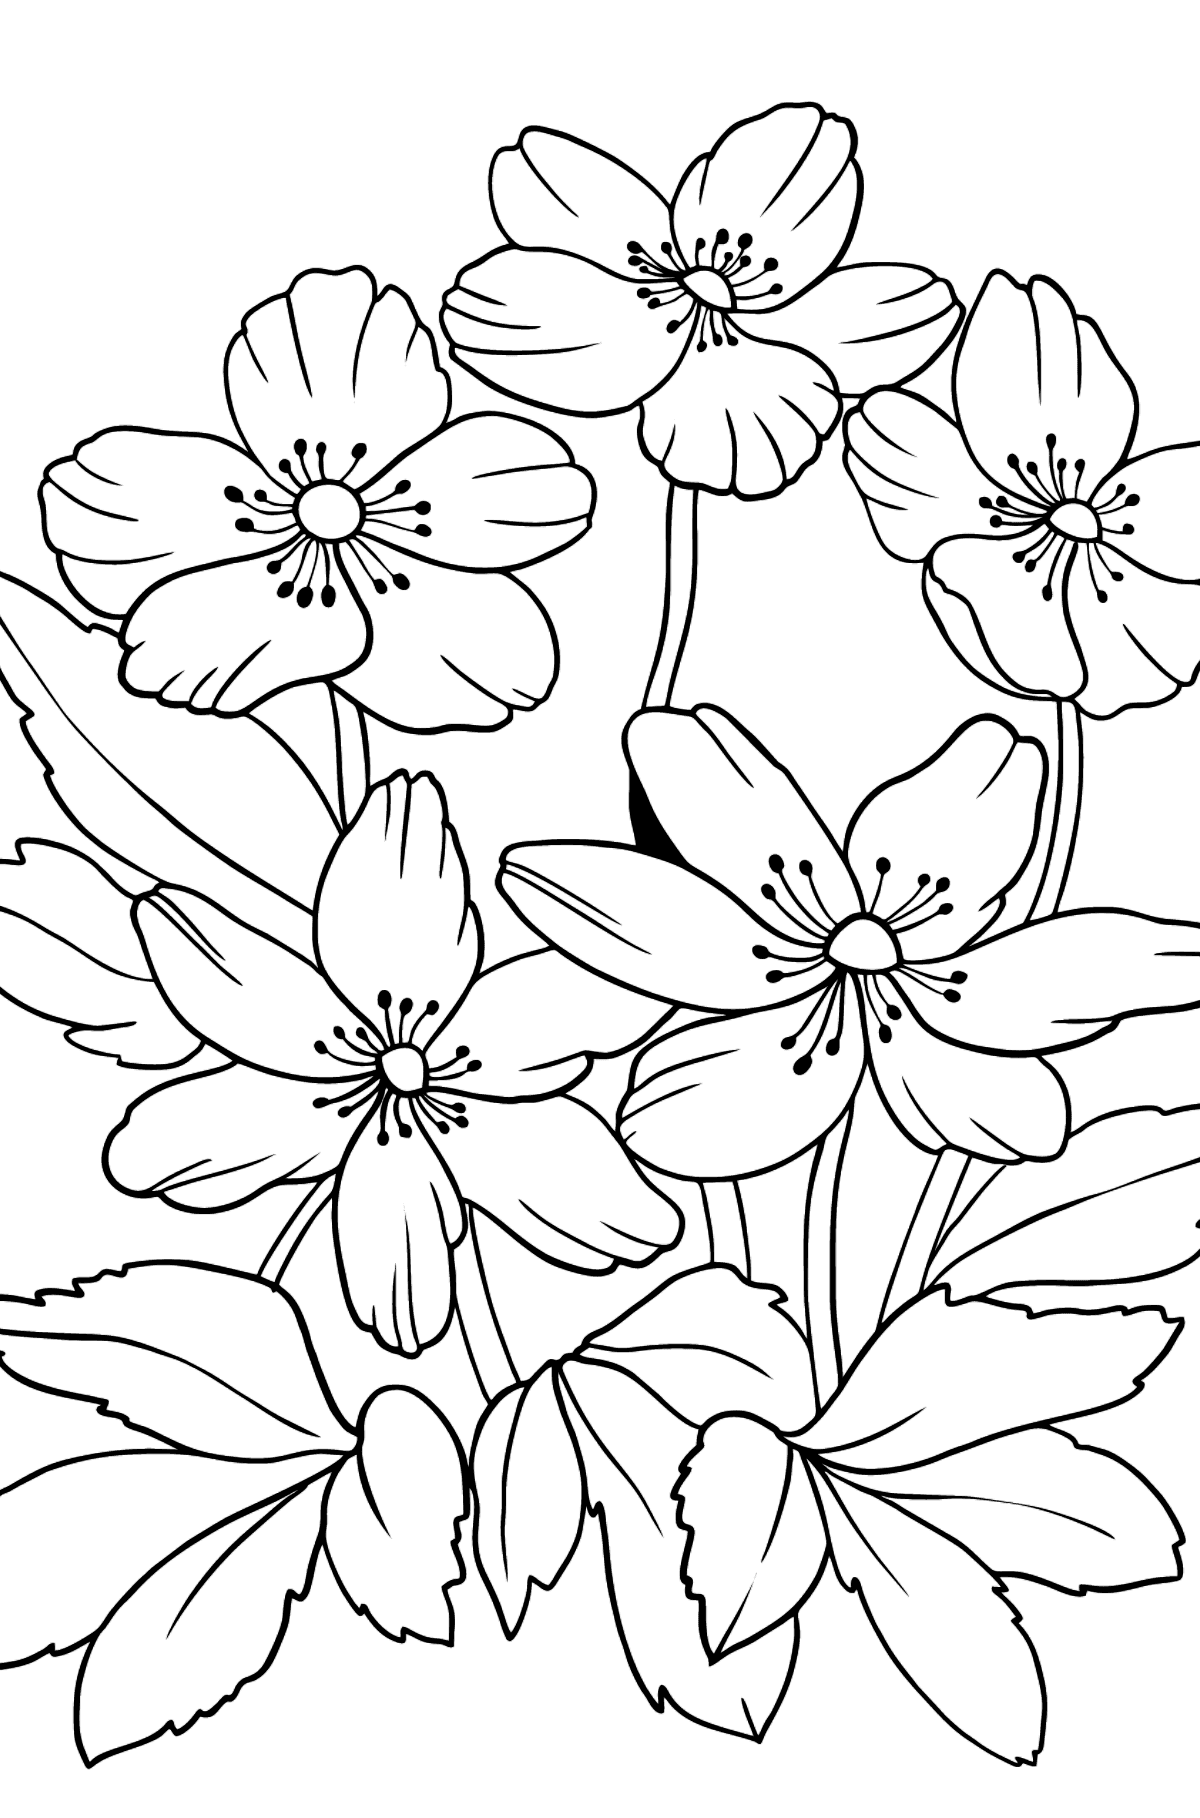 Desen de colorat flori Anemona (dificil) - Desene de colorat pentru copii